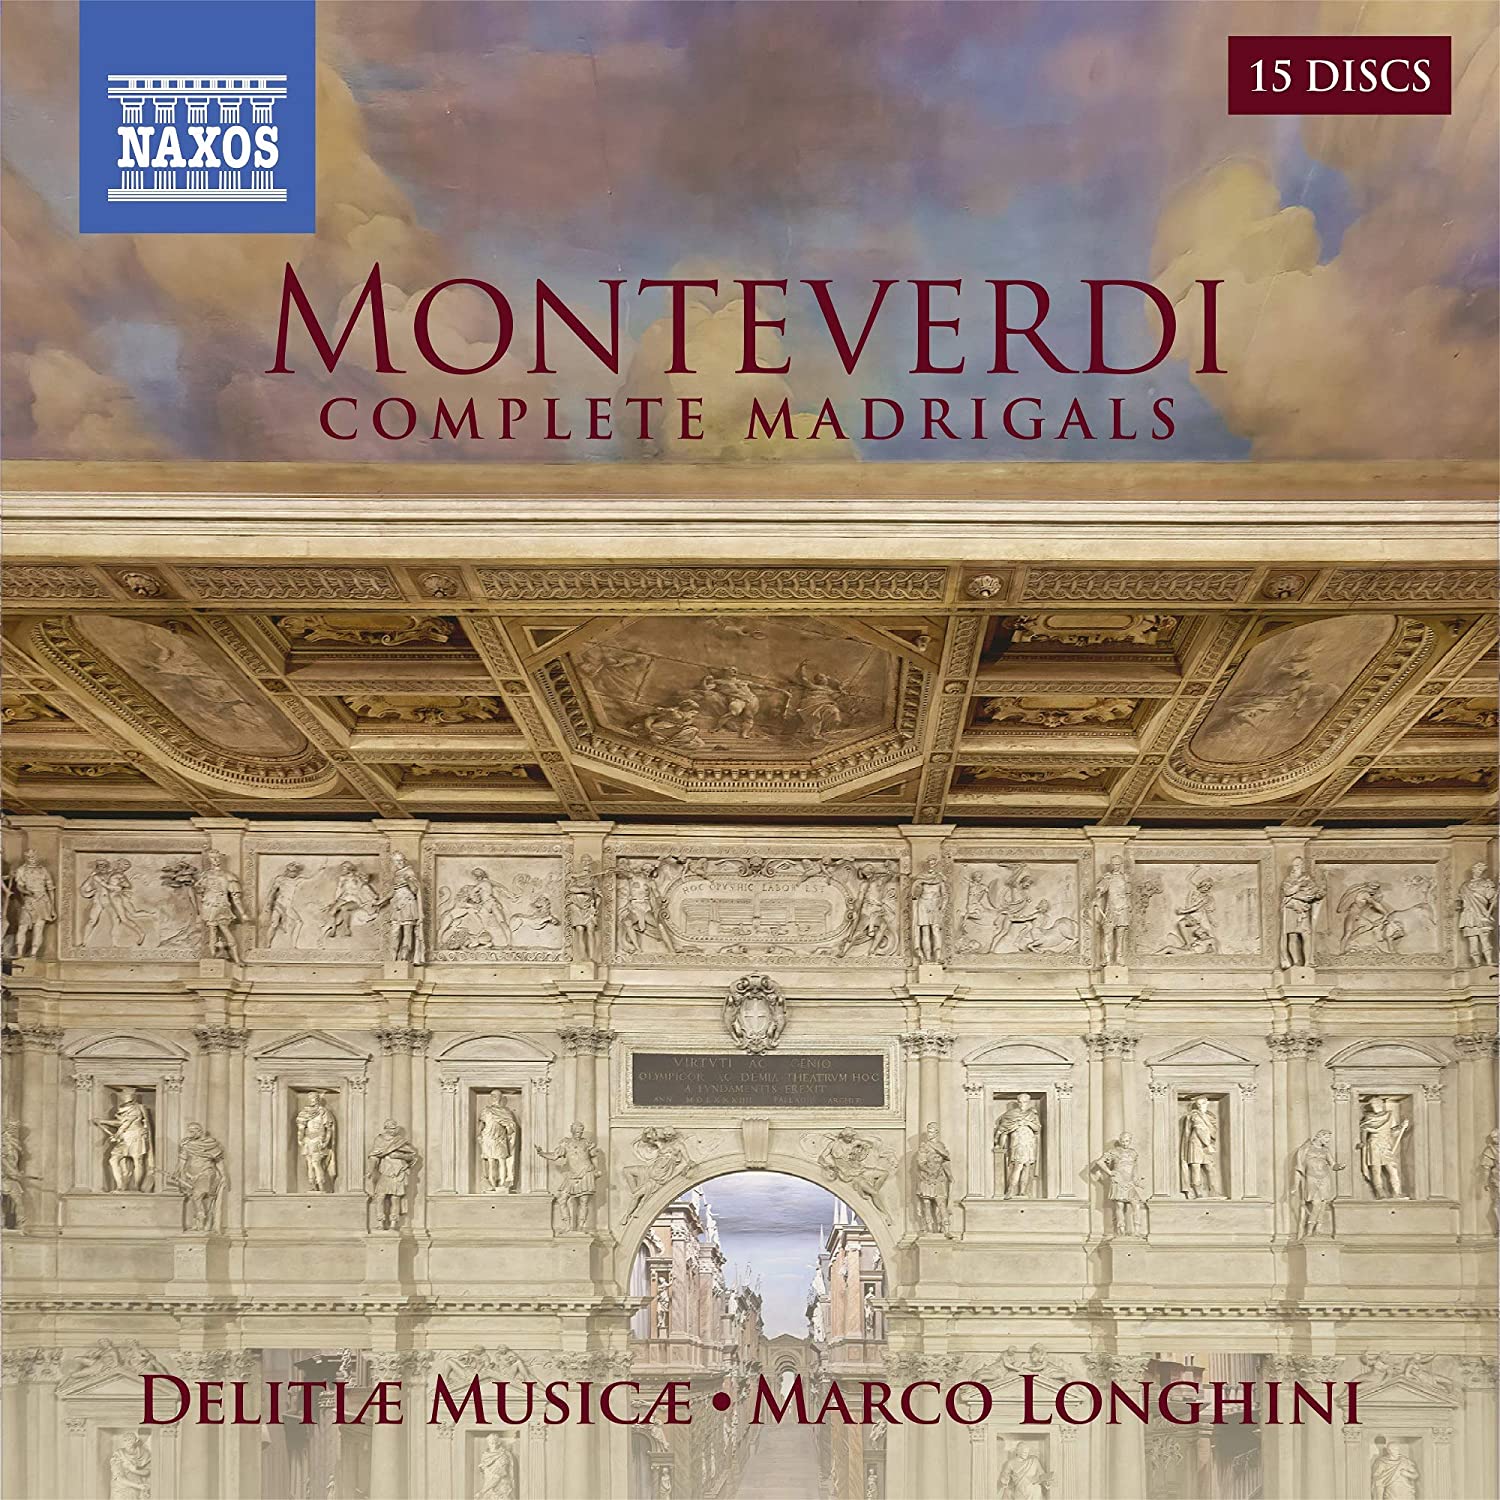 Audio Cd Claudio Monteverdi - Complete Madrigals (15 Cd) NUOVO SIGILLATO, EDIZIONE DEL 03/06/2020 SUBITO DISPONIBILE